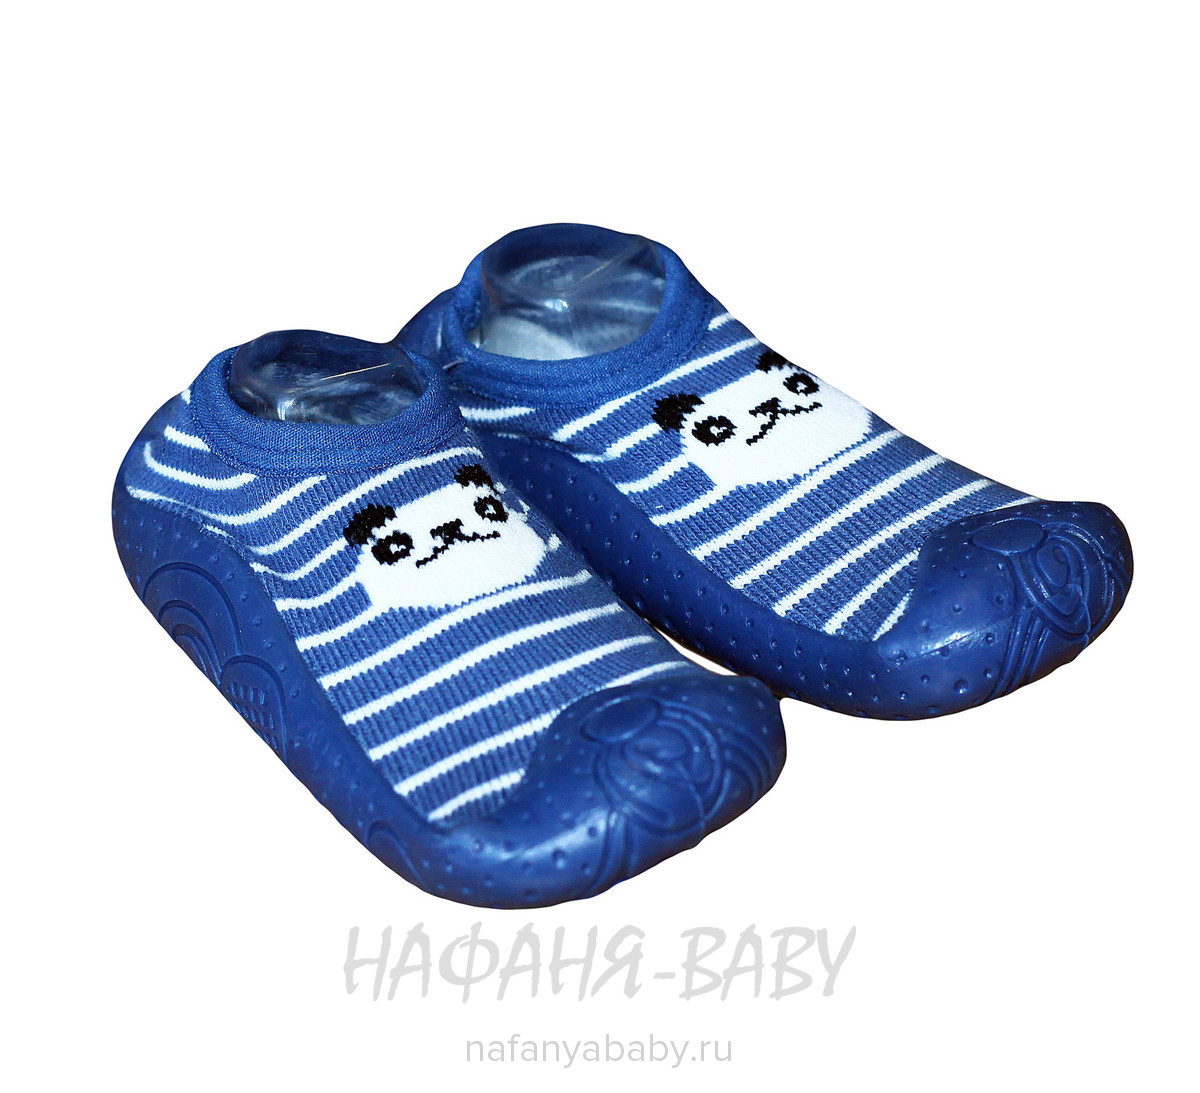 Ботиночки - носочки Fluo Sand арт: 7053, 1-4 года, 0-12 мес, цвет сине-серый, оптом Китай (Пекин)